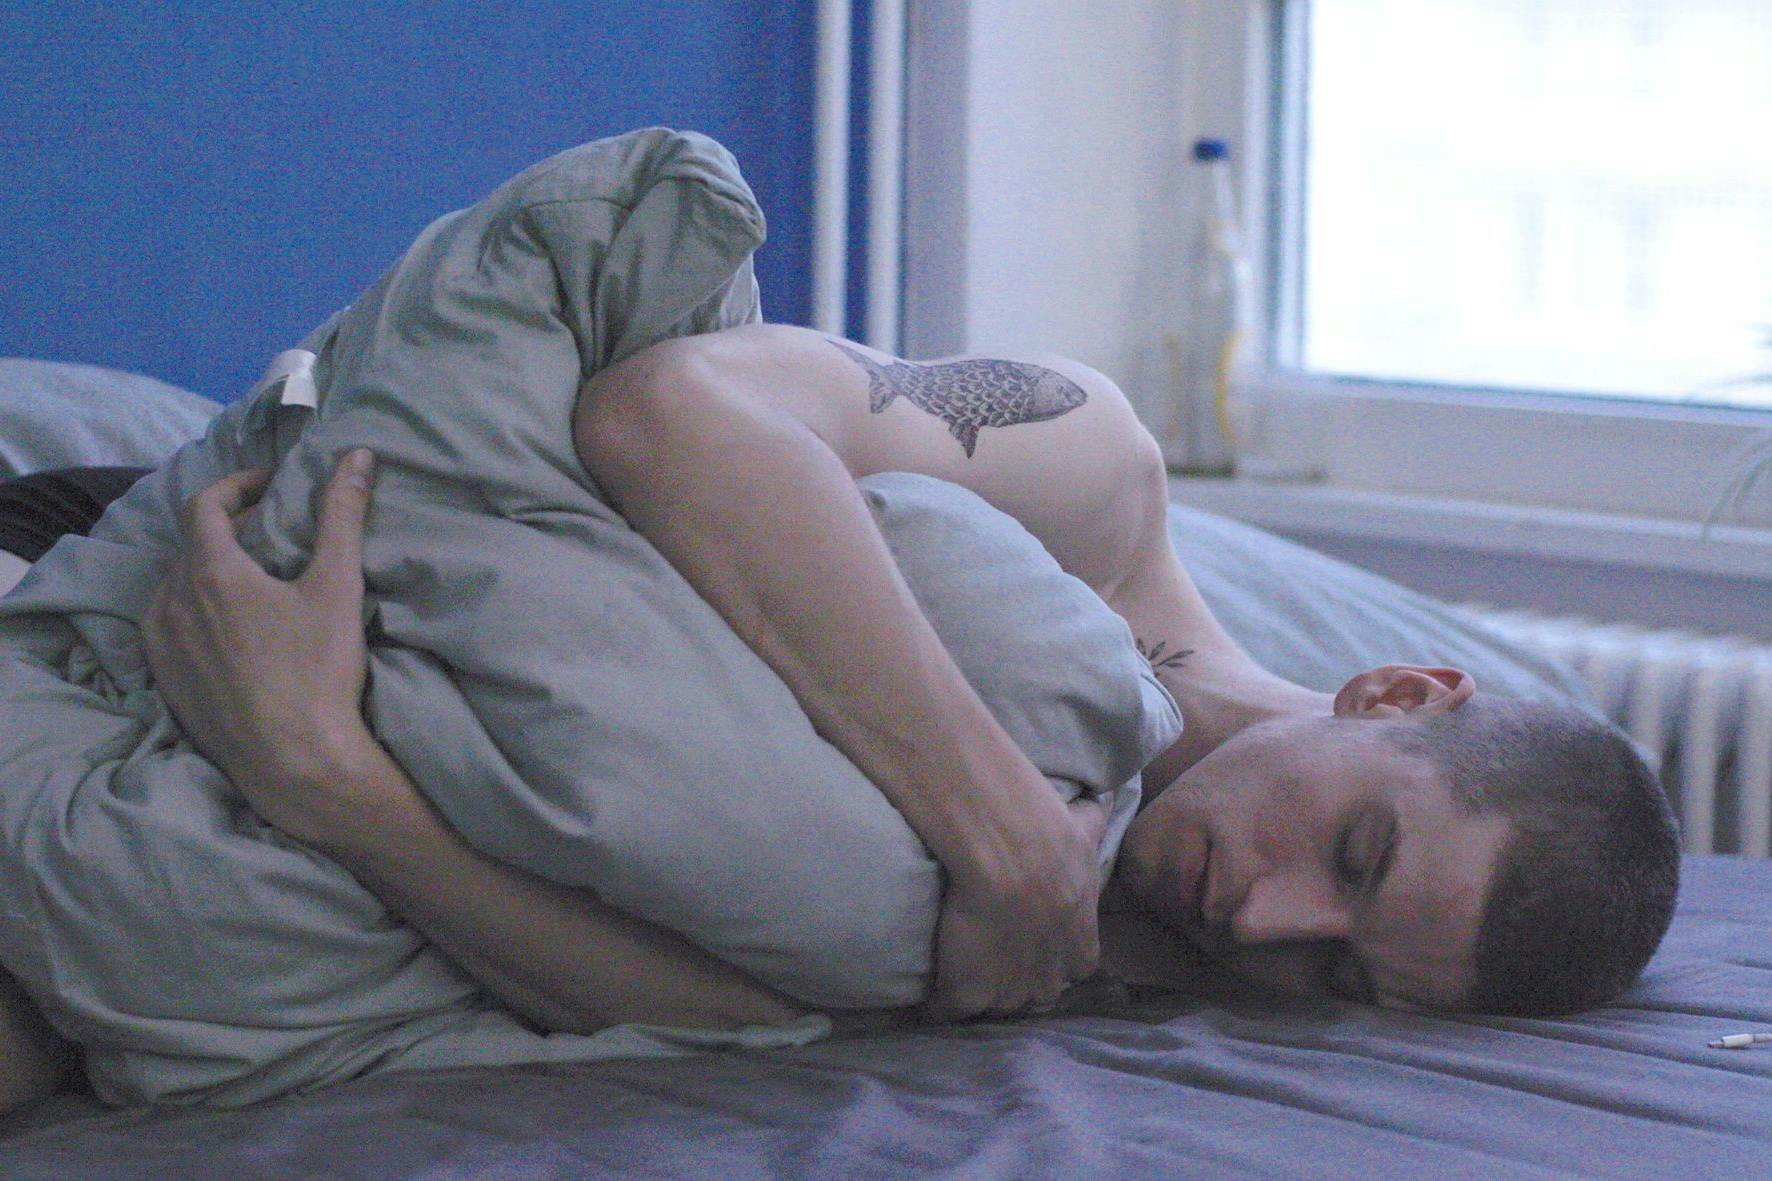 Moritz kuschelt sich an seine Decke im Berlin-Film „Drifter“.